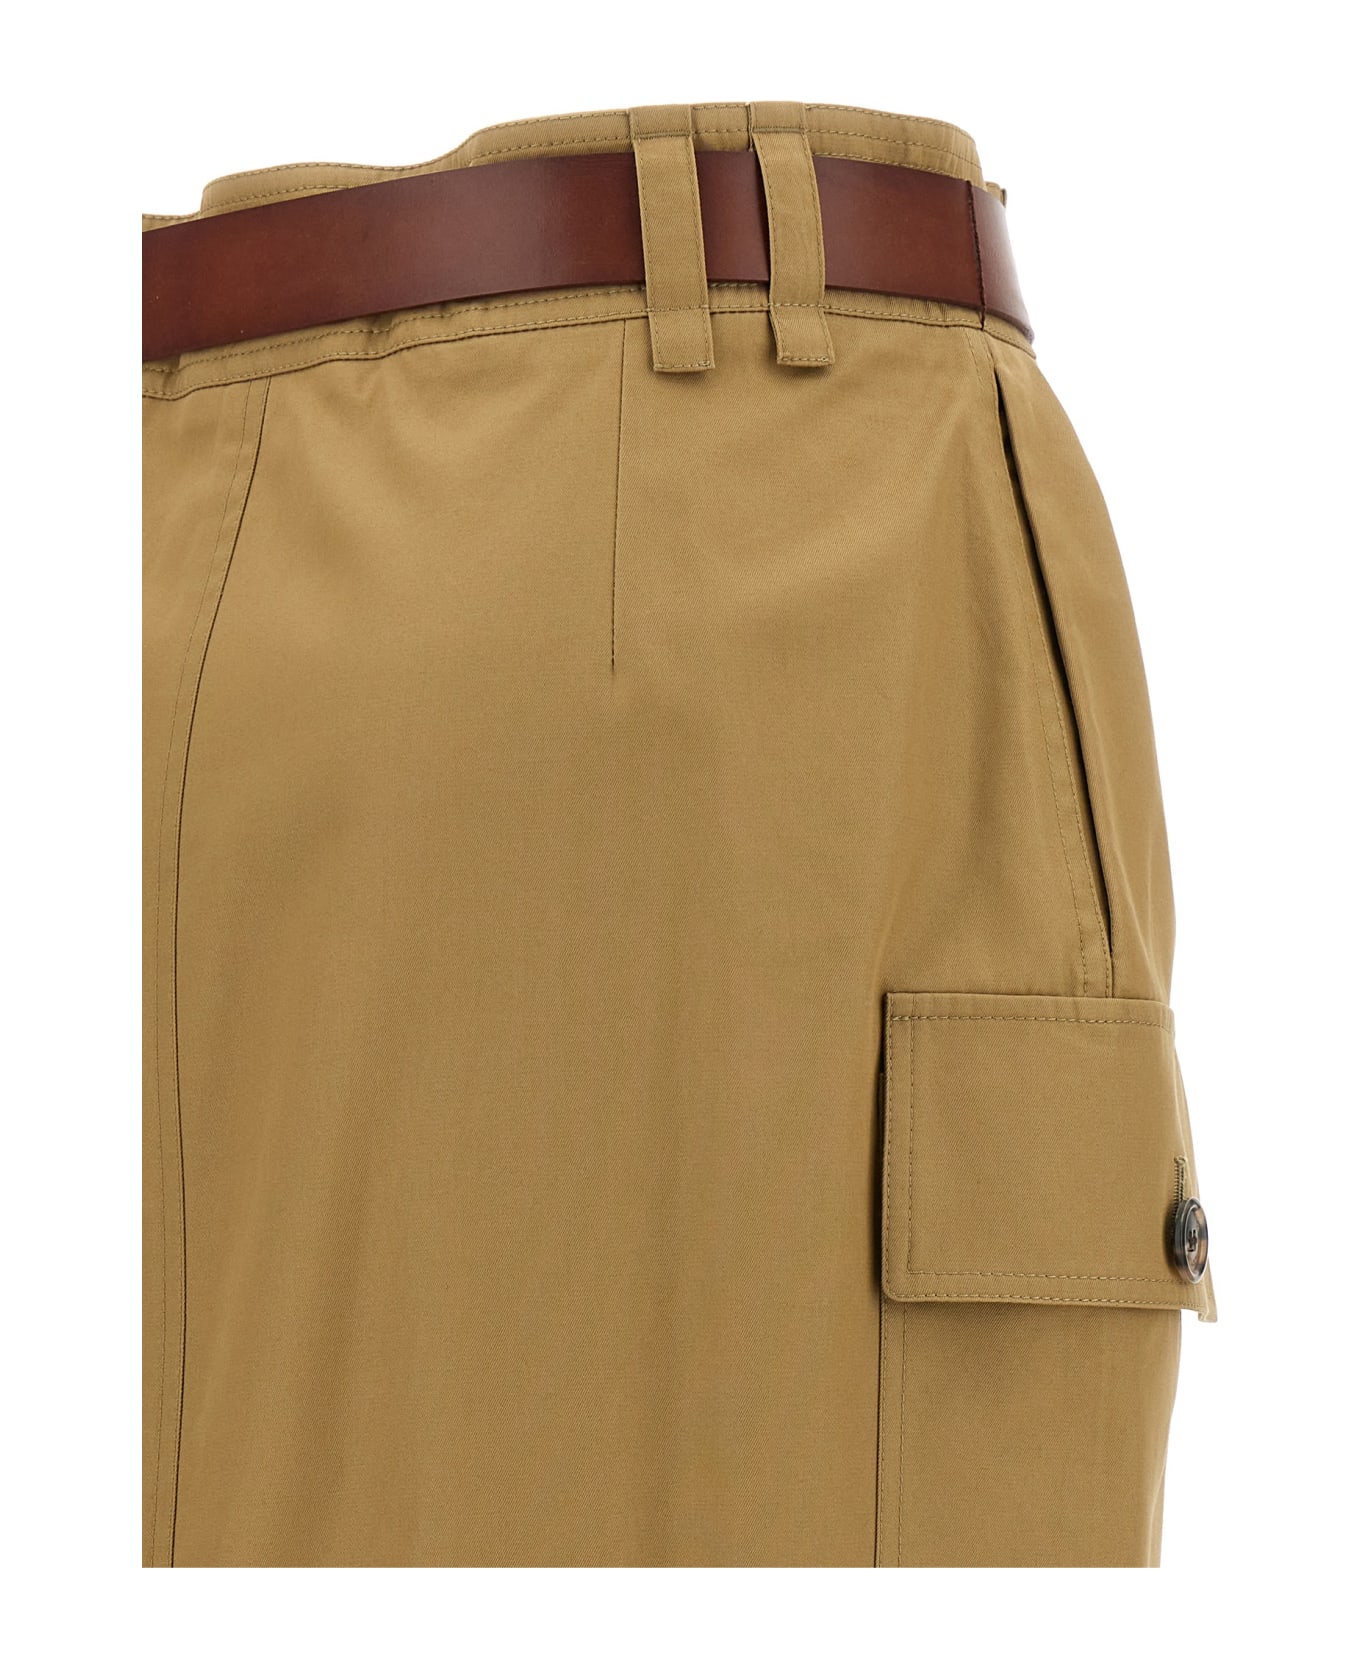 Saint Laurent 'cassandre' Skirt - Beige スカート